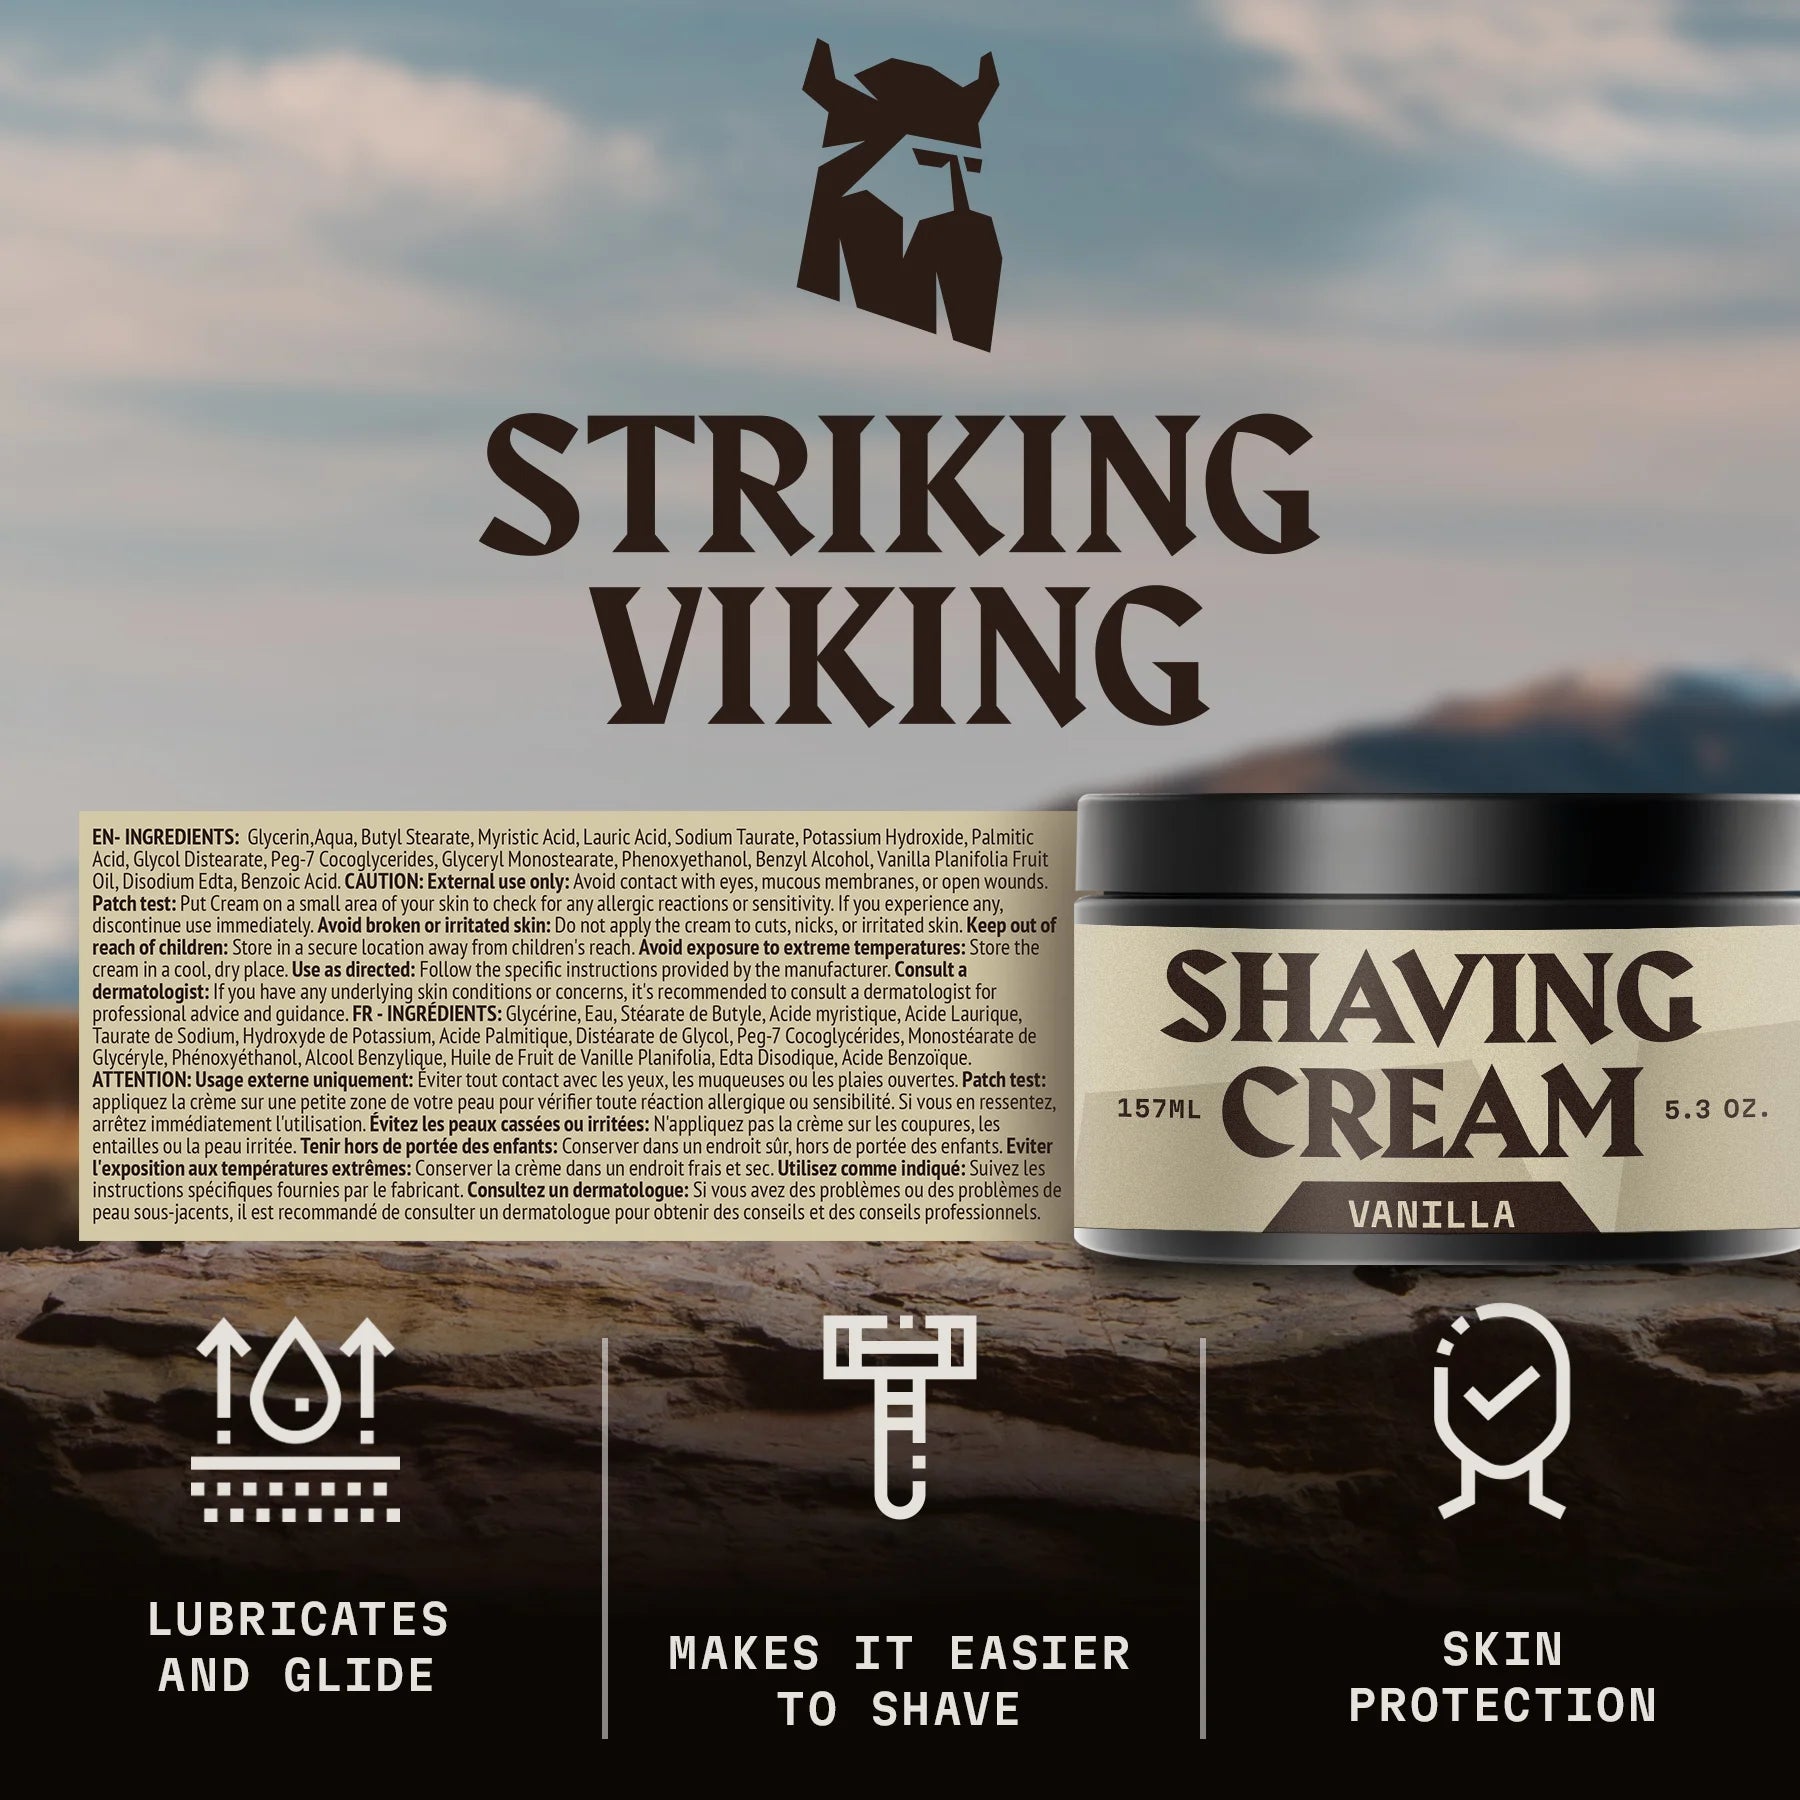 Shaving Cream for Men (Vanilla)